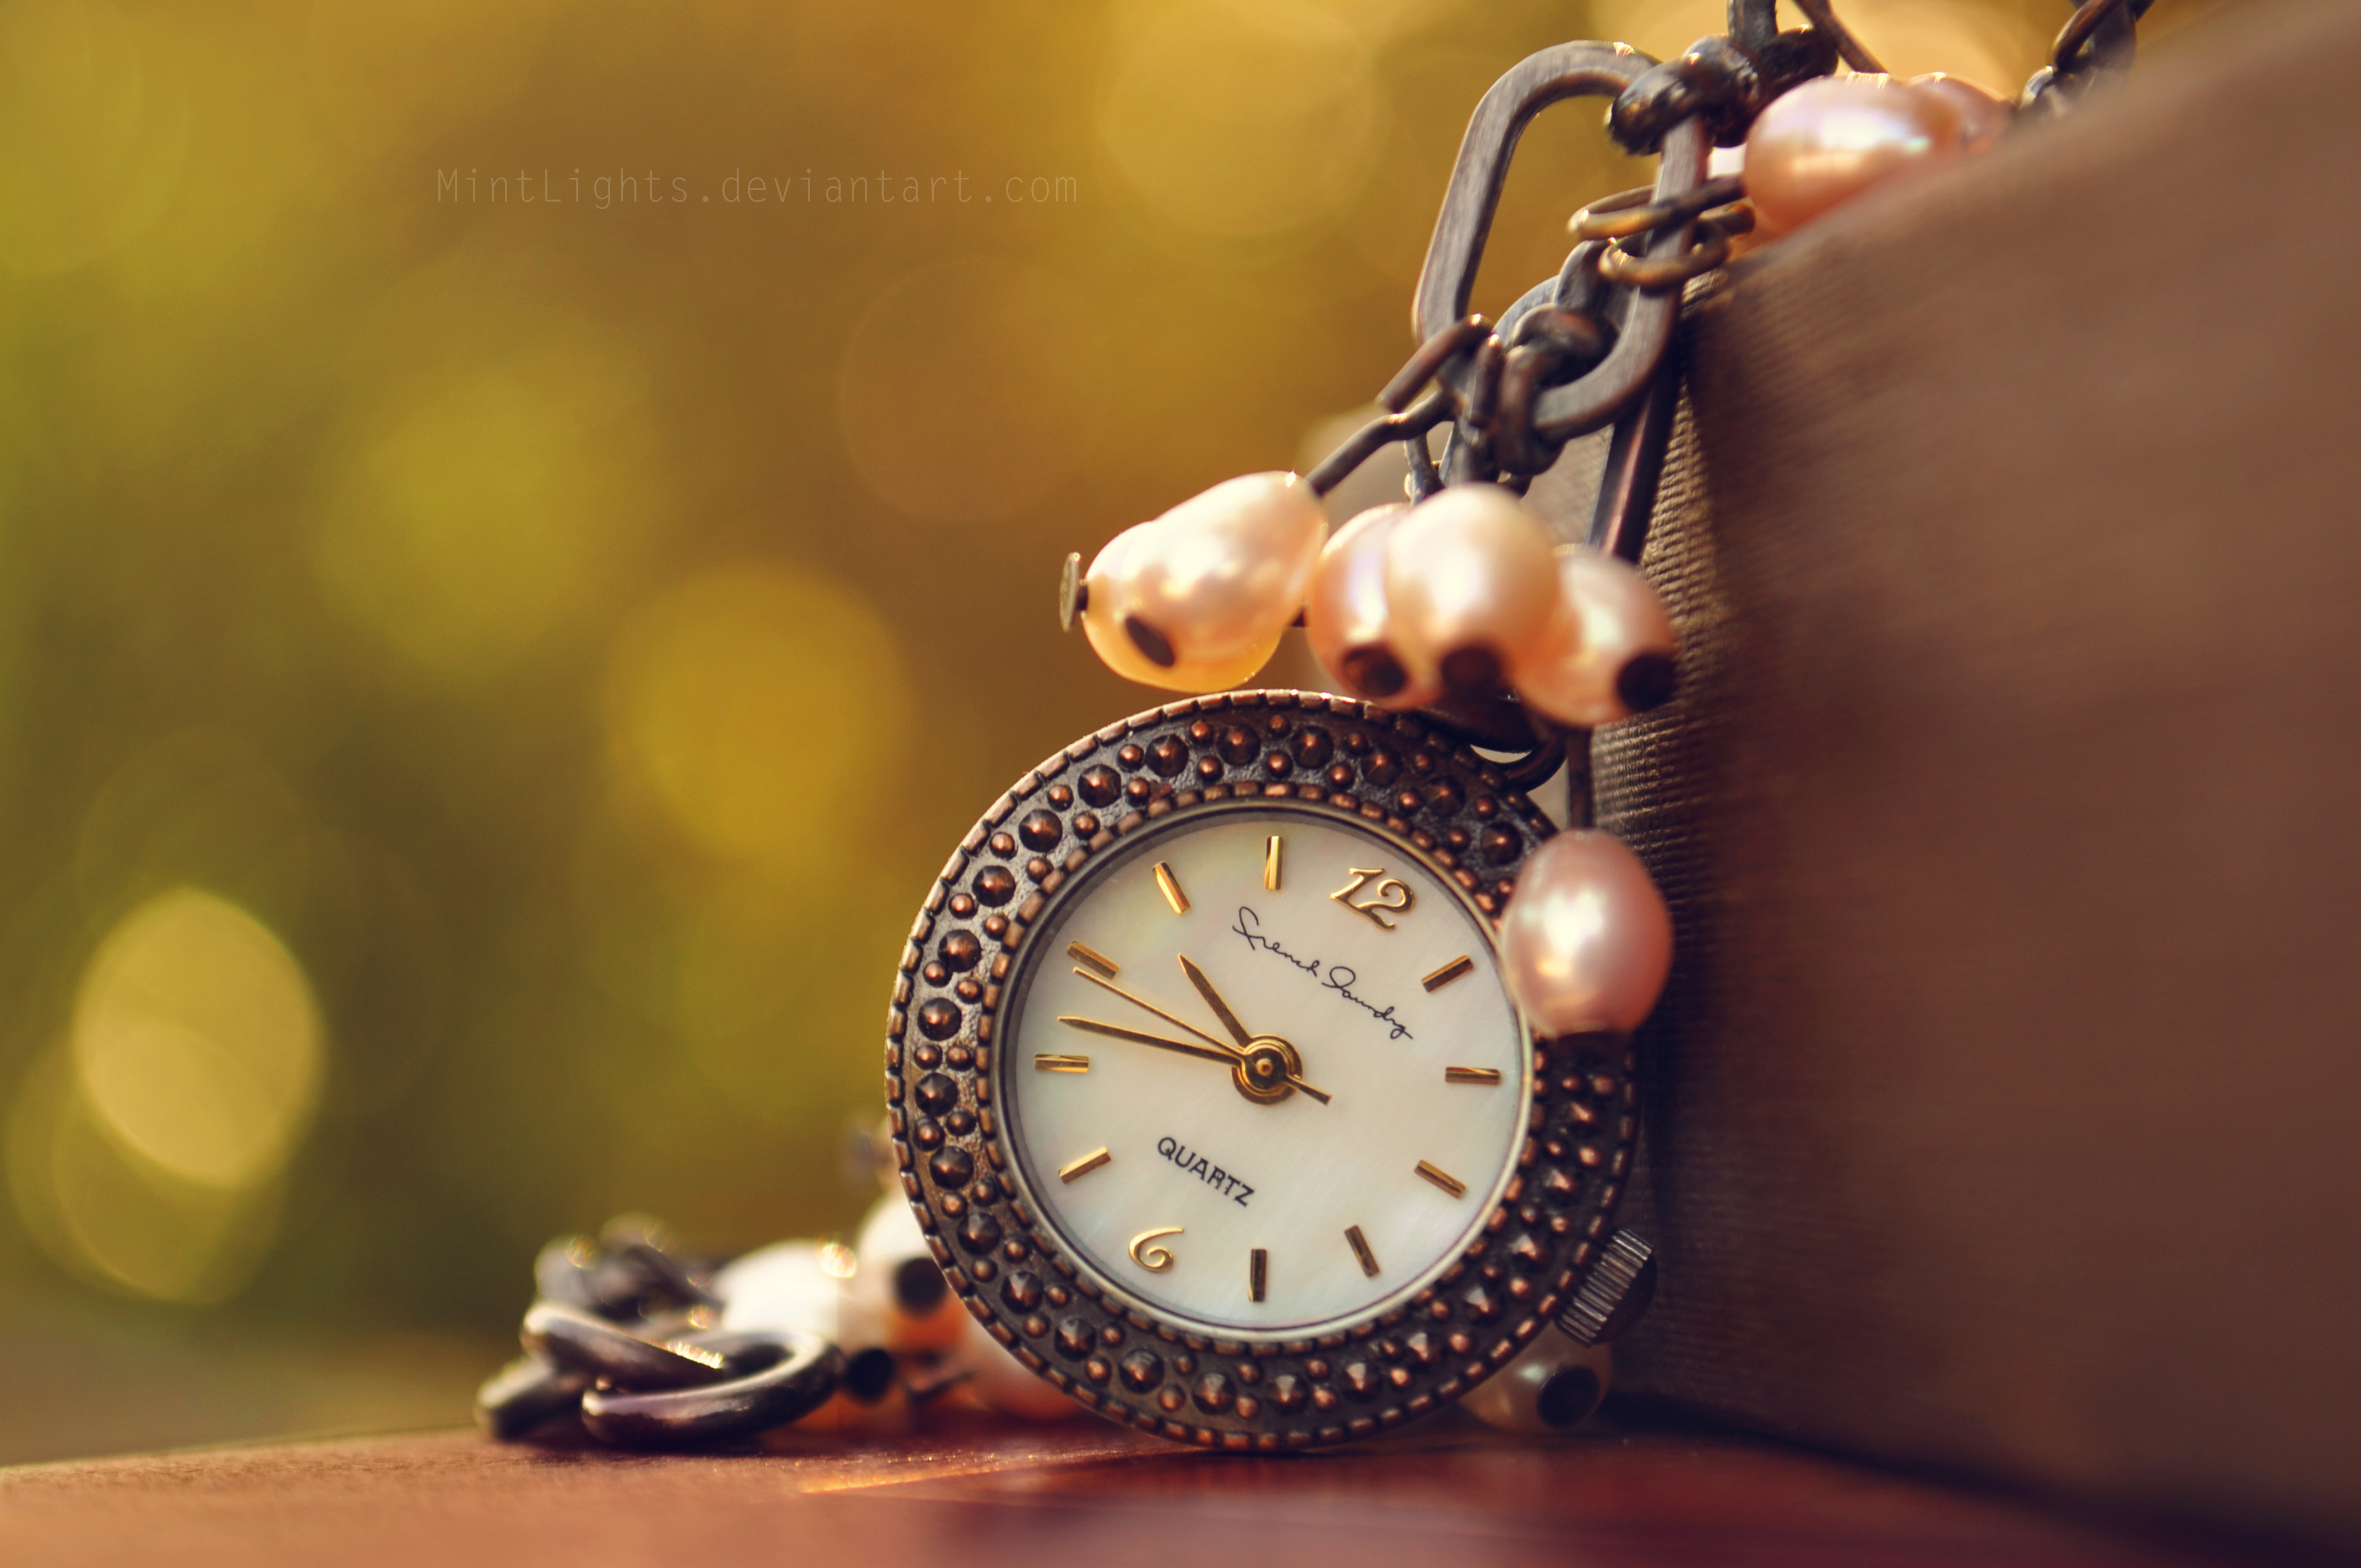 Фото обоев на часы. Красивые часы. Фон с часами. Обои с часами. Часы на красивом фоне.